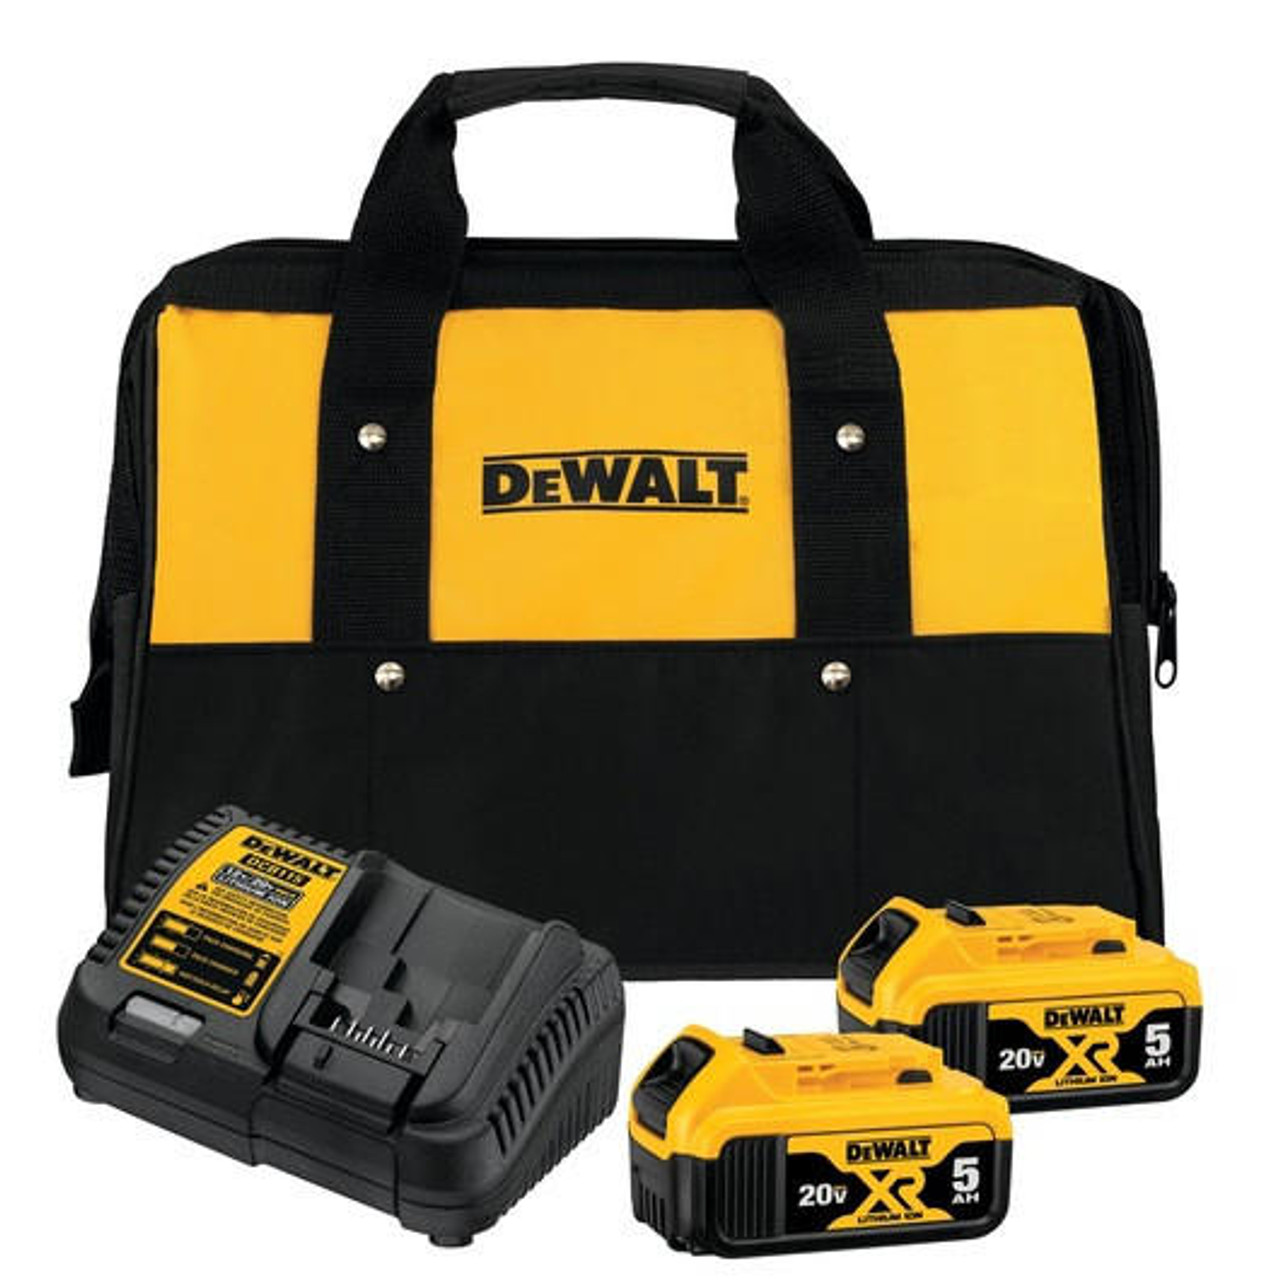 Dewalt DEWALT 20V MAX* 5.0Ah Starter Kit With 2 Batteries DCB205-2CK 